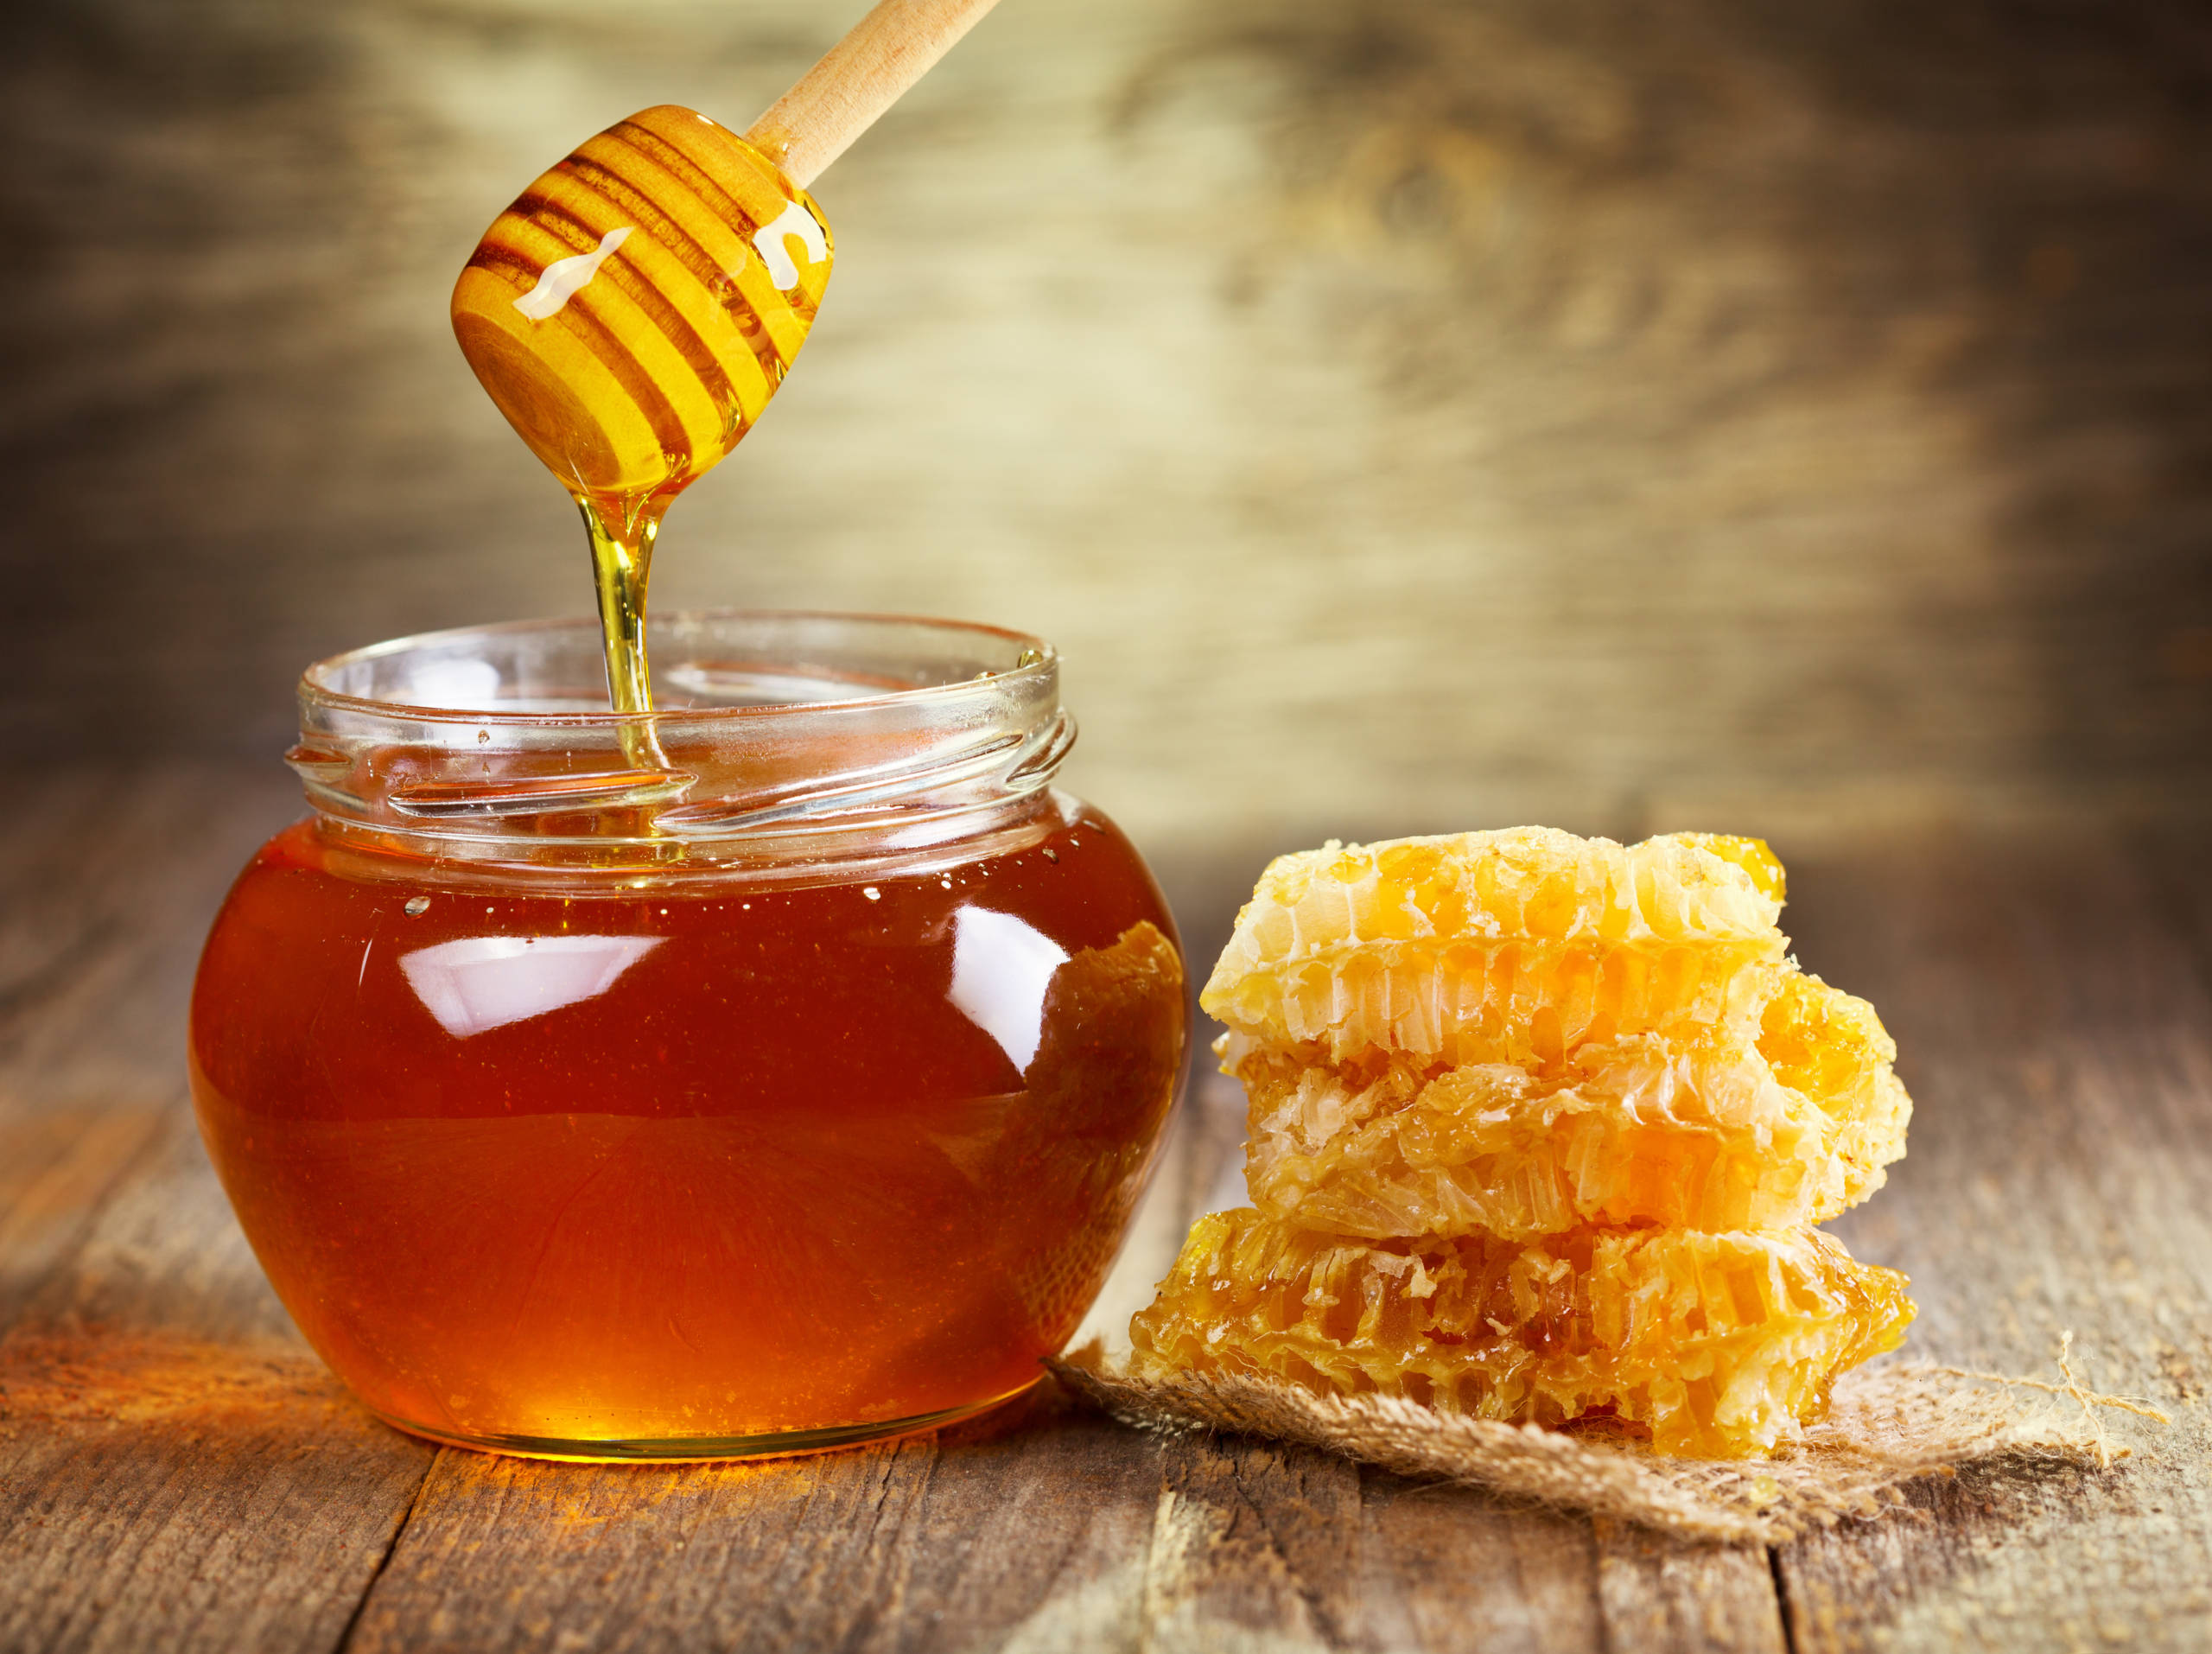 Pot de miel et morceau de ruche